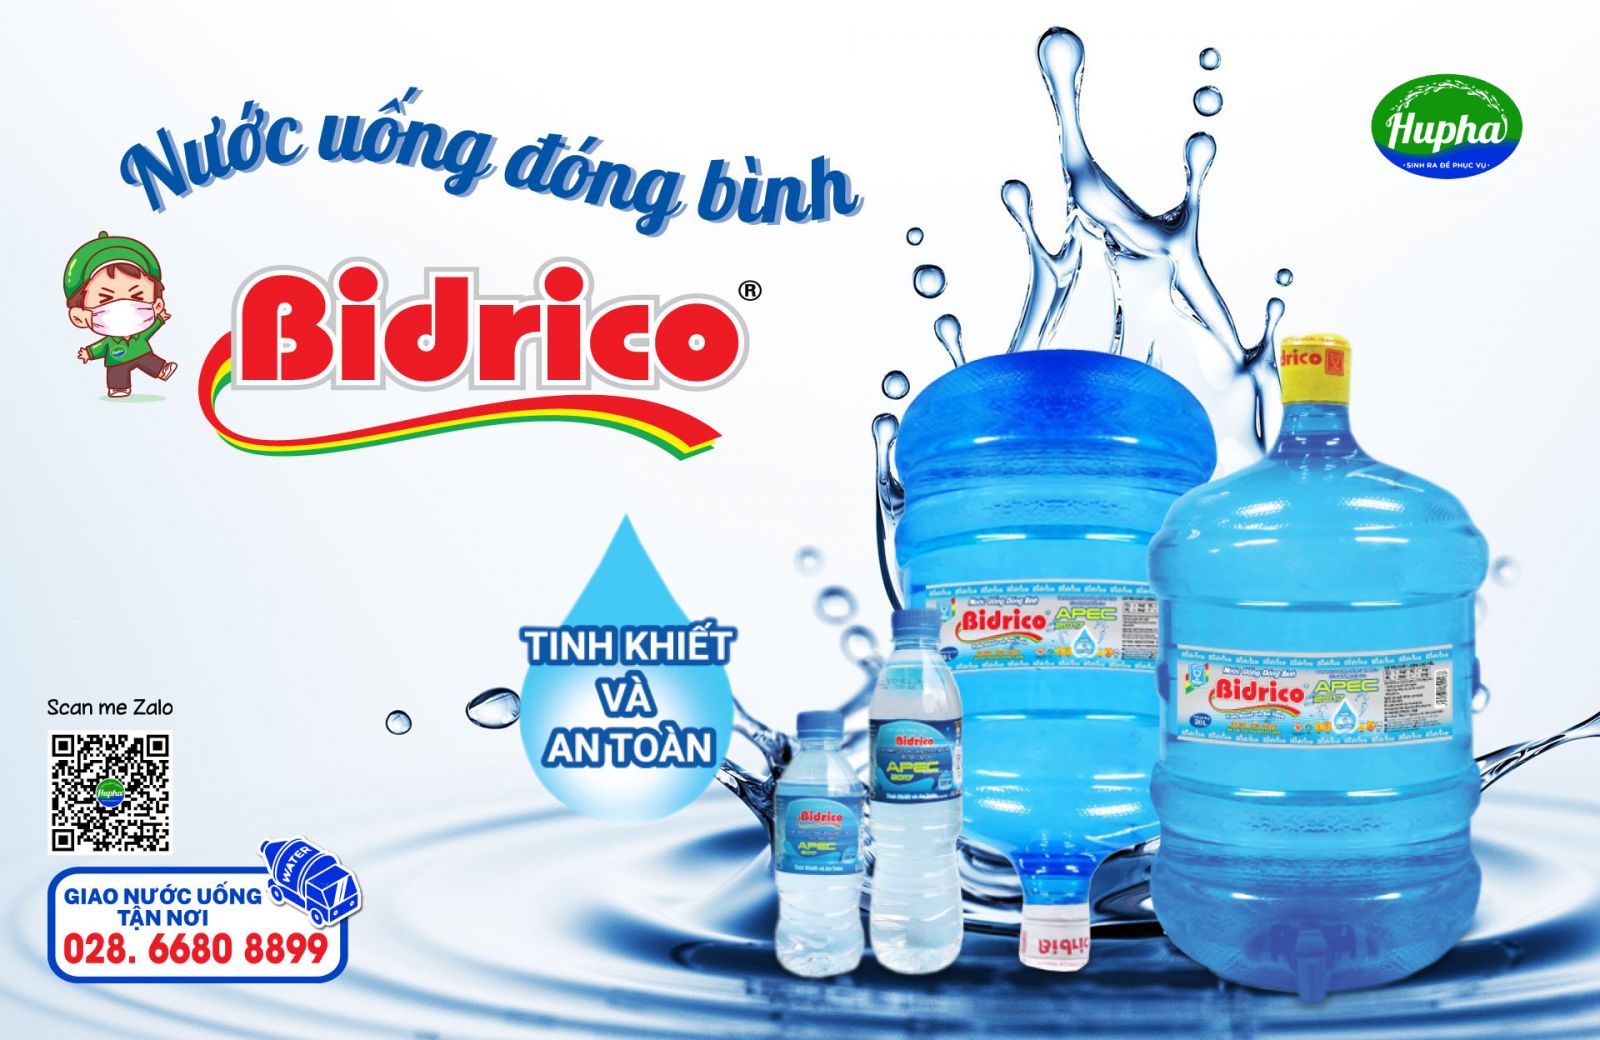 Nước Uống Bidrico